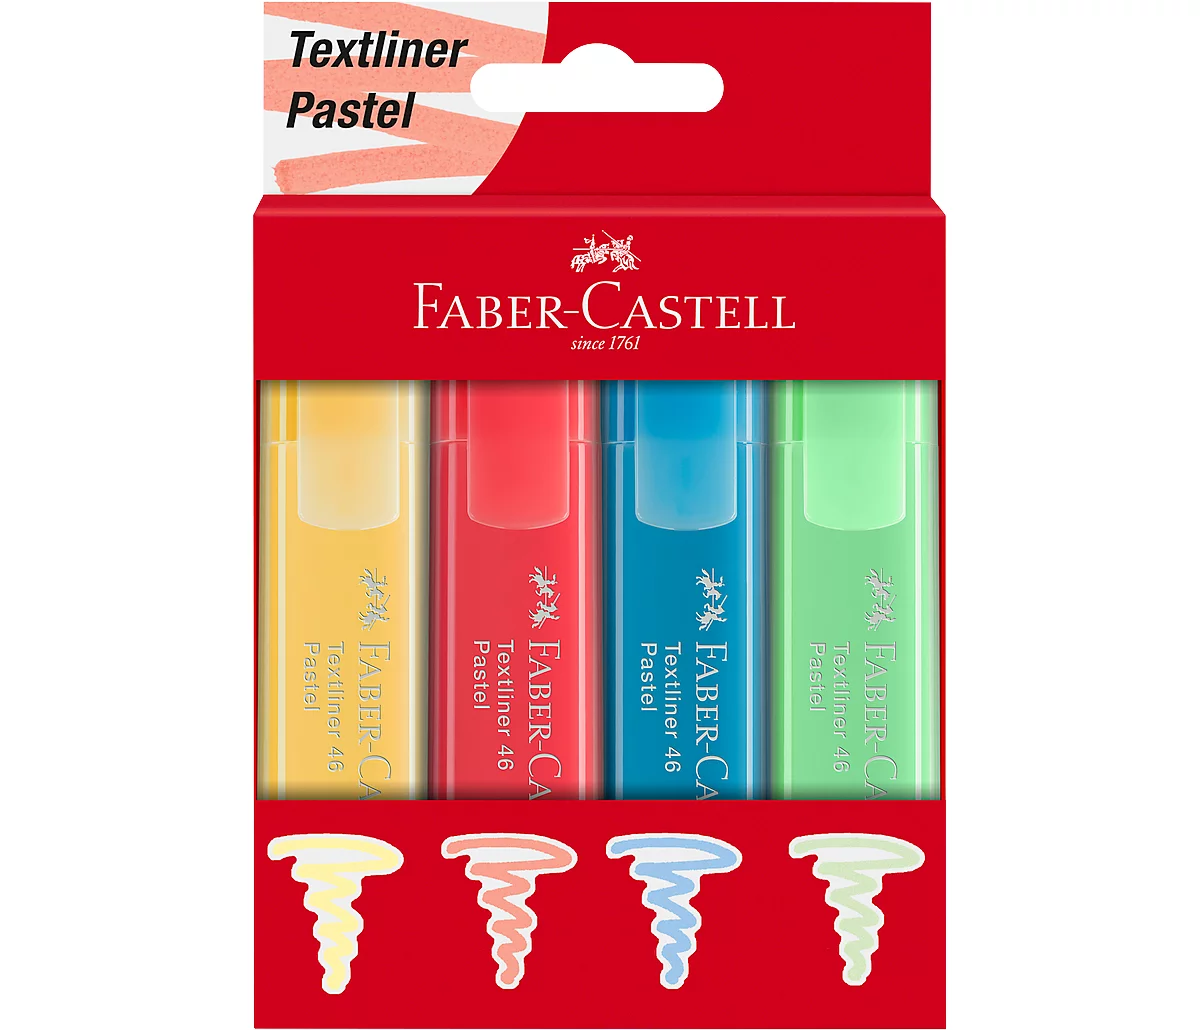 Textliner Faber-Castell, 4-er Etui, vanille, apricot, lichtblau, lichtgrün